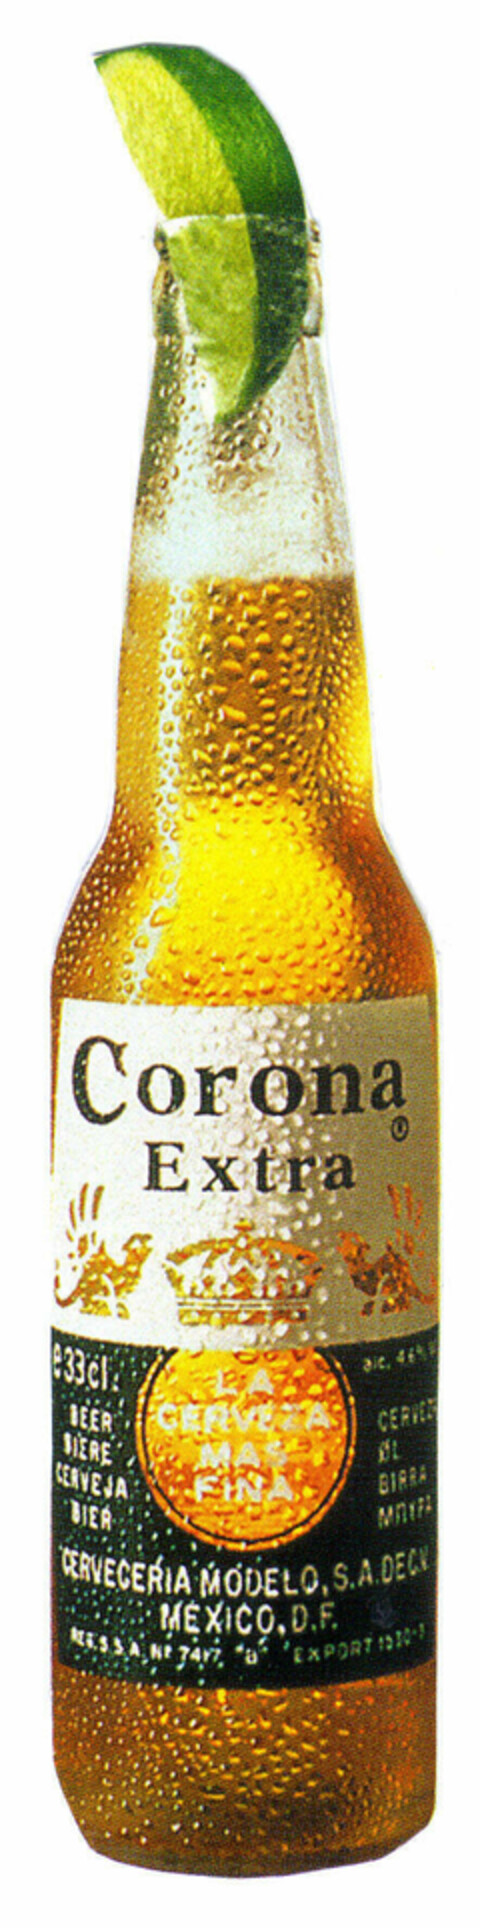 Corona extra e33cl. BEER BIERE CERVEJA BIER LA CERVEZA MAS FINA CERVEZA ØL BIRRA CERVECERIA MODELO, S.A.. DECV. MEXICO, D.F. Logo (EUIPO, 19.10.2001)